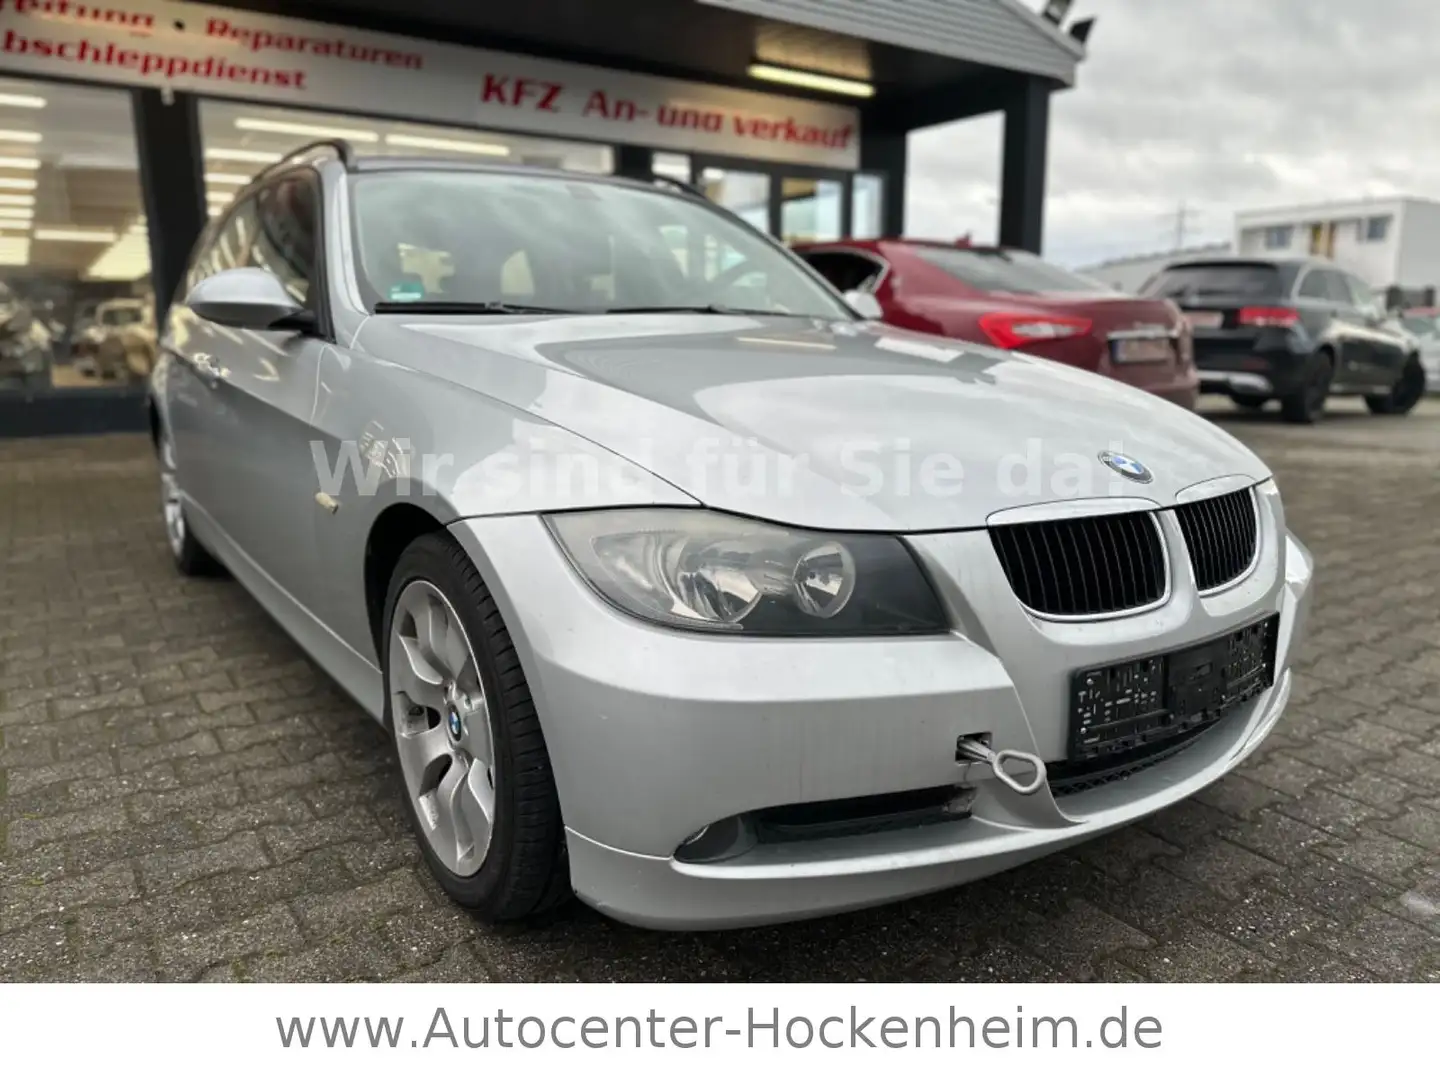 BMW 318 i Touring gebraucht kaufen in Hechingen Preis 6990 eur